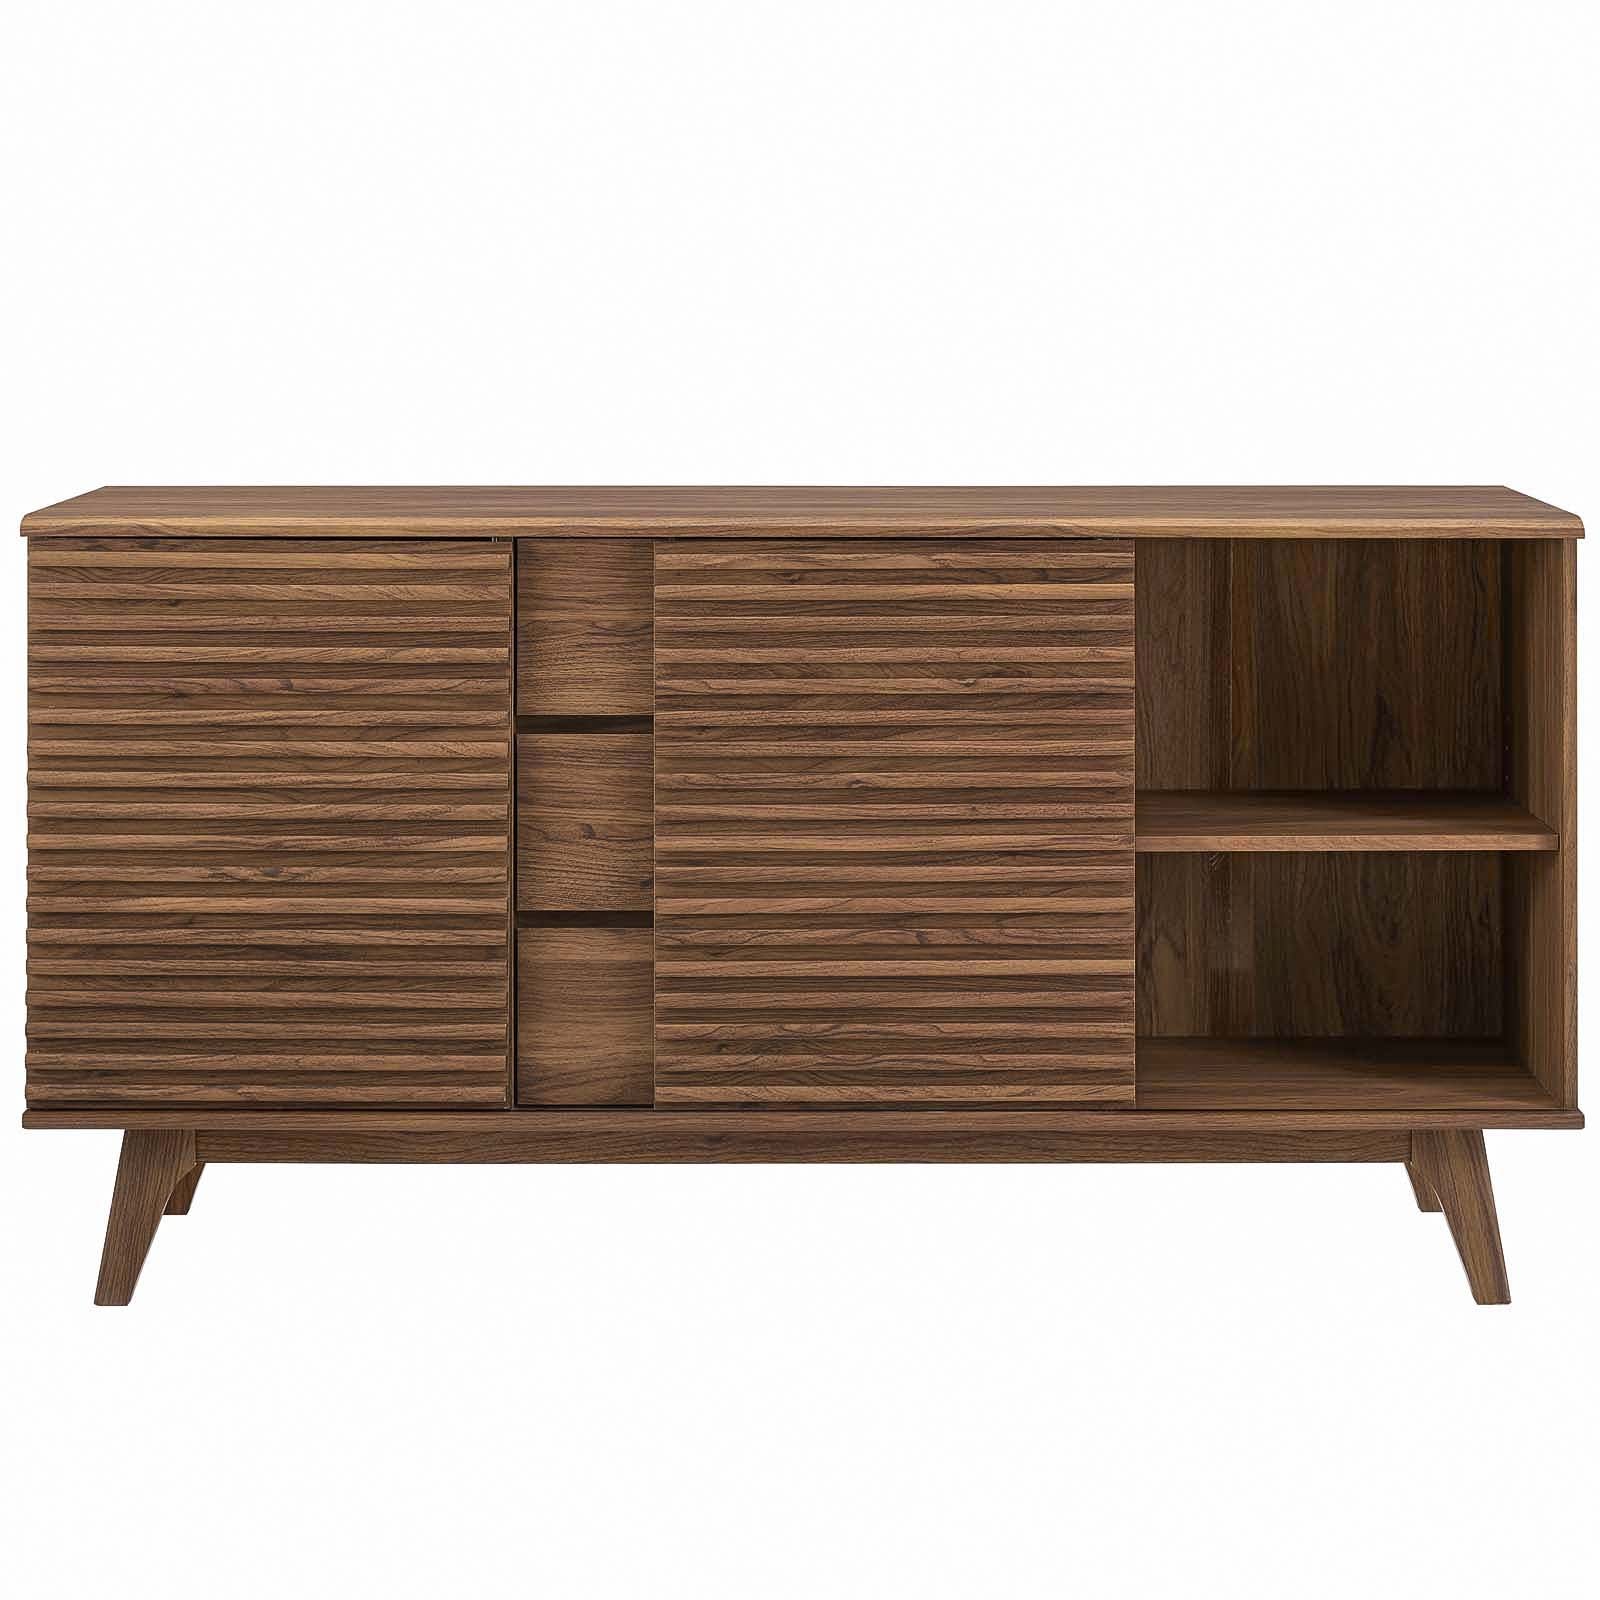 Modway Buffets & Cabinets - Render Sideboard Buffet Table Walnut